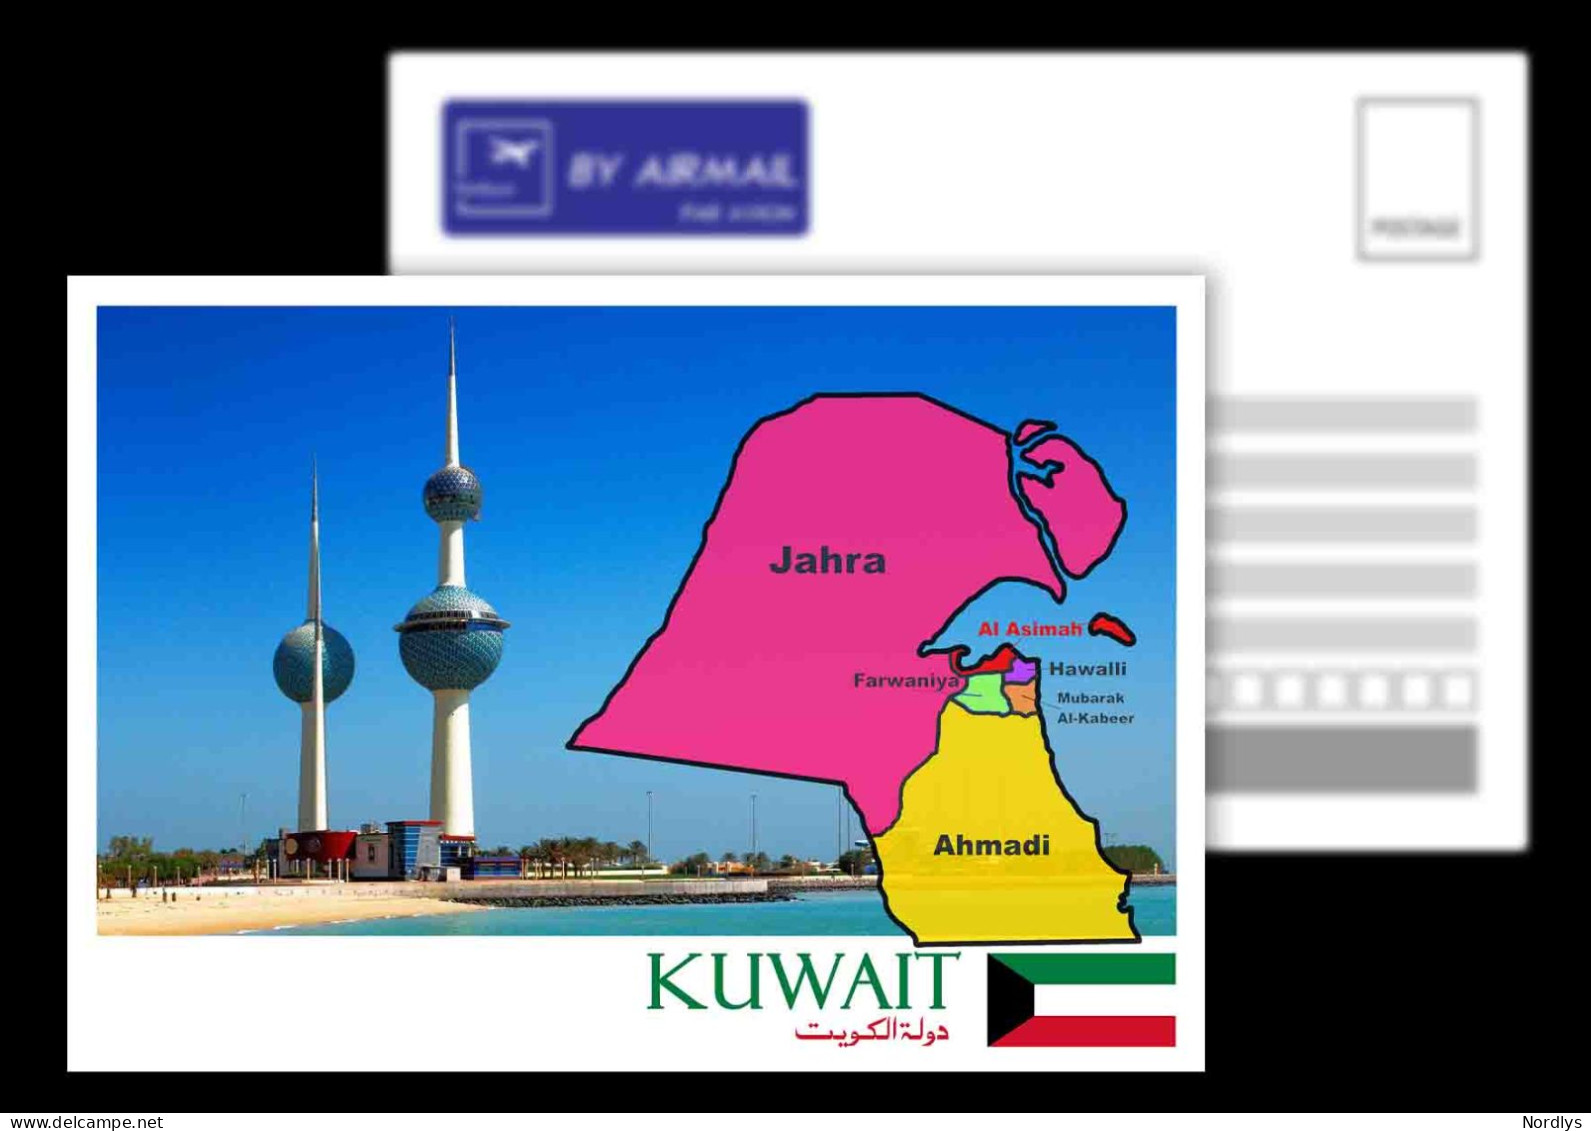 Kuwait / Kuwait City / Postcard / View Card / Map Card - Kuwait